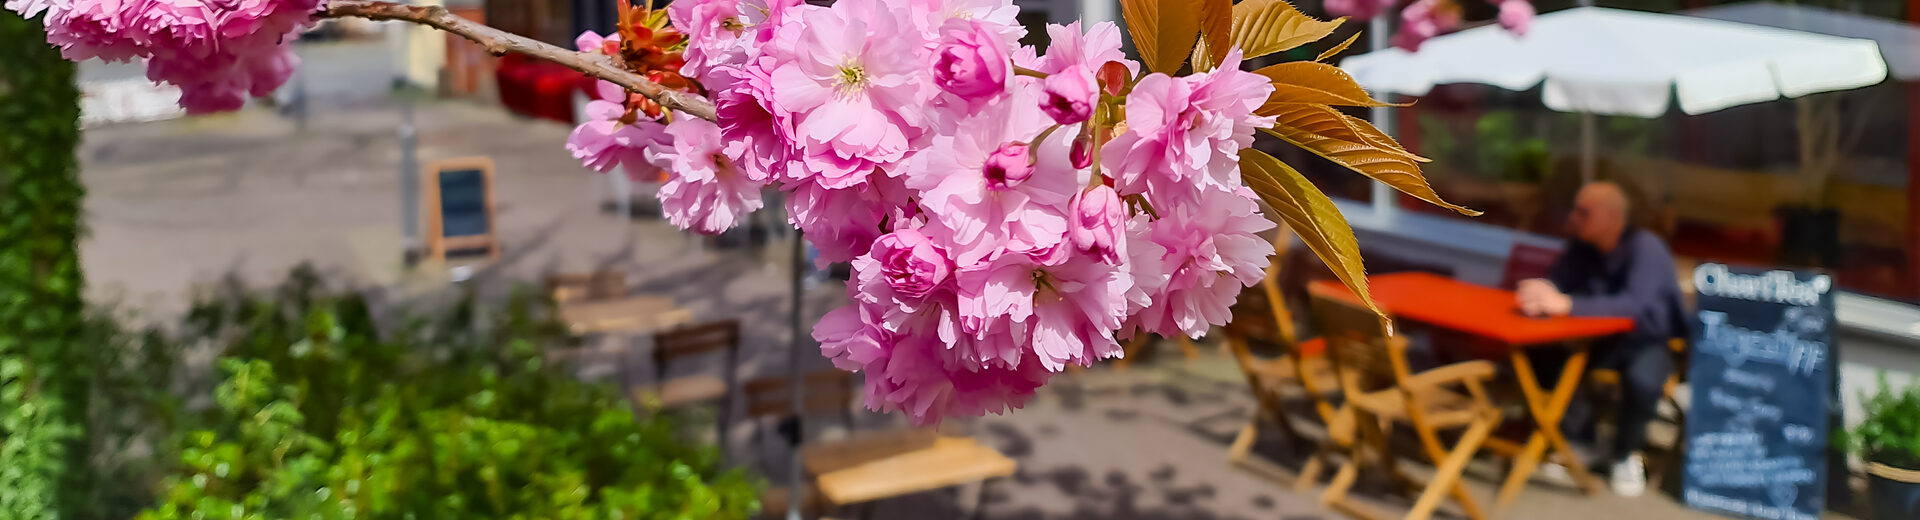 Frühlingsblüten und Café im Hintergrund im Ortsteil Wehlheiden